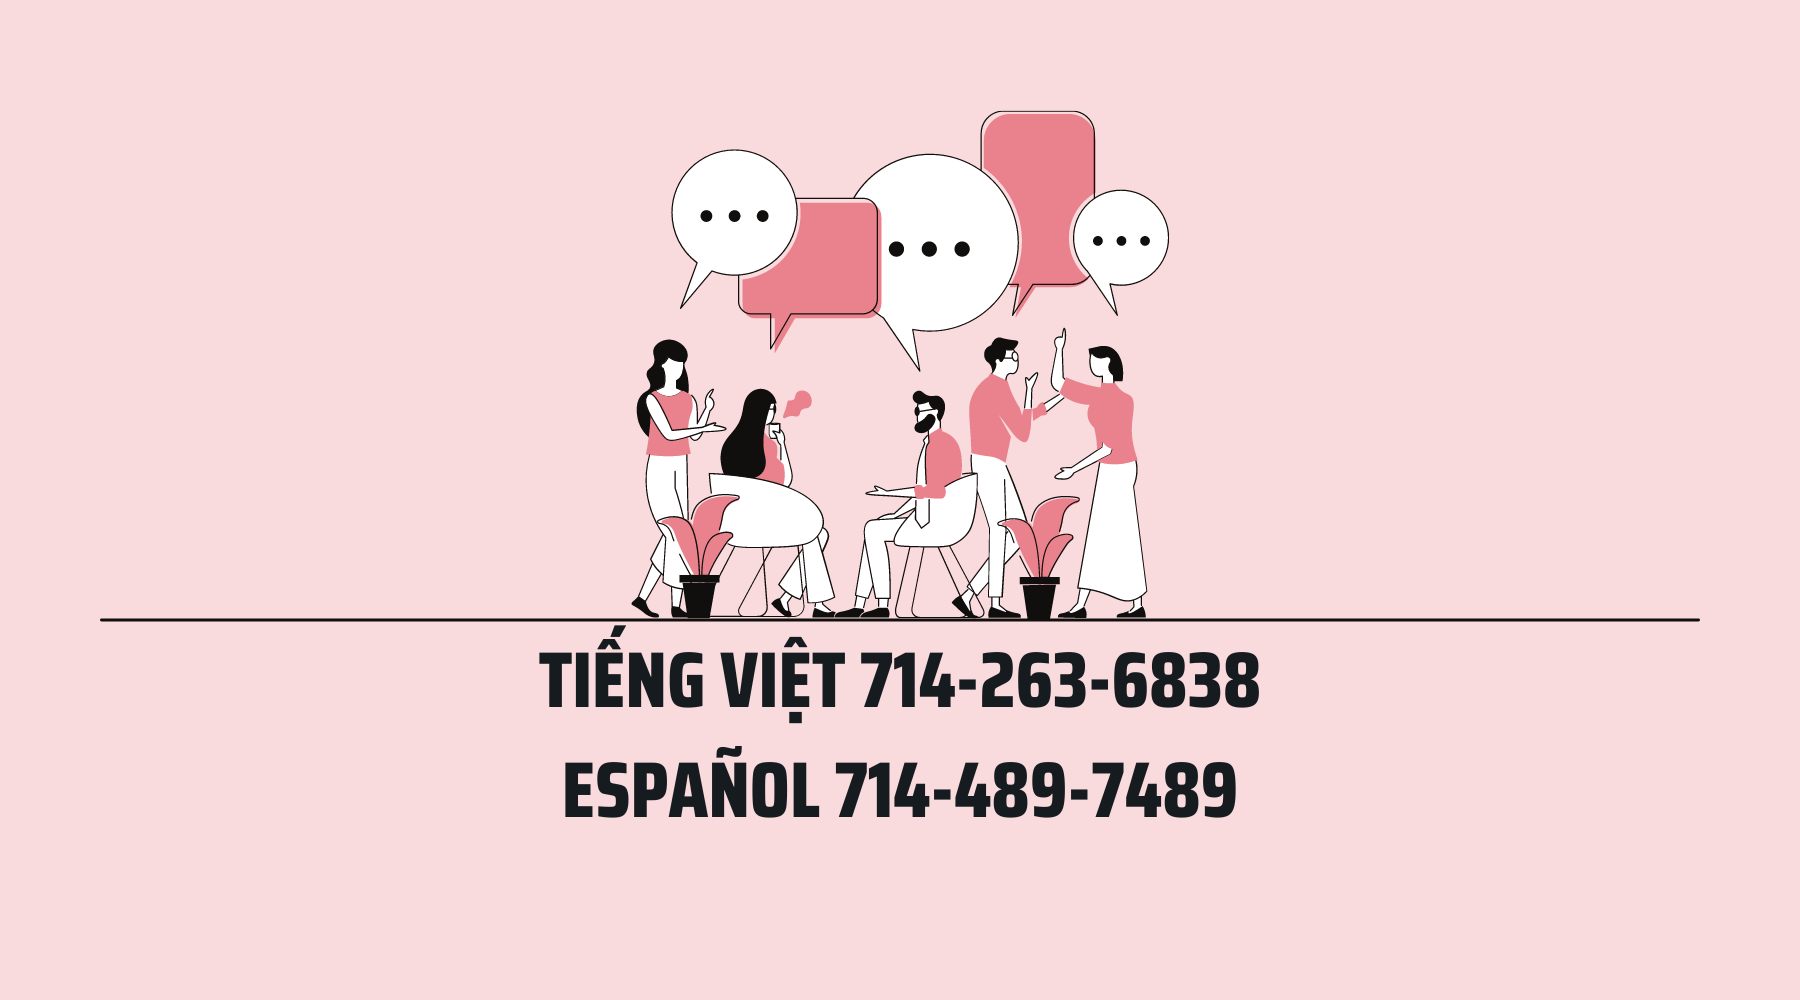 Spanish, Vietnamese, Call, Nail Supply, Nail Supply Store, C8 Nail Supply, People Talking, Español, Tiếng Việt